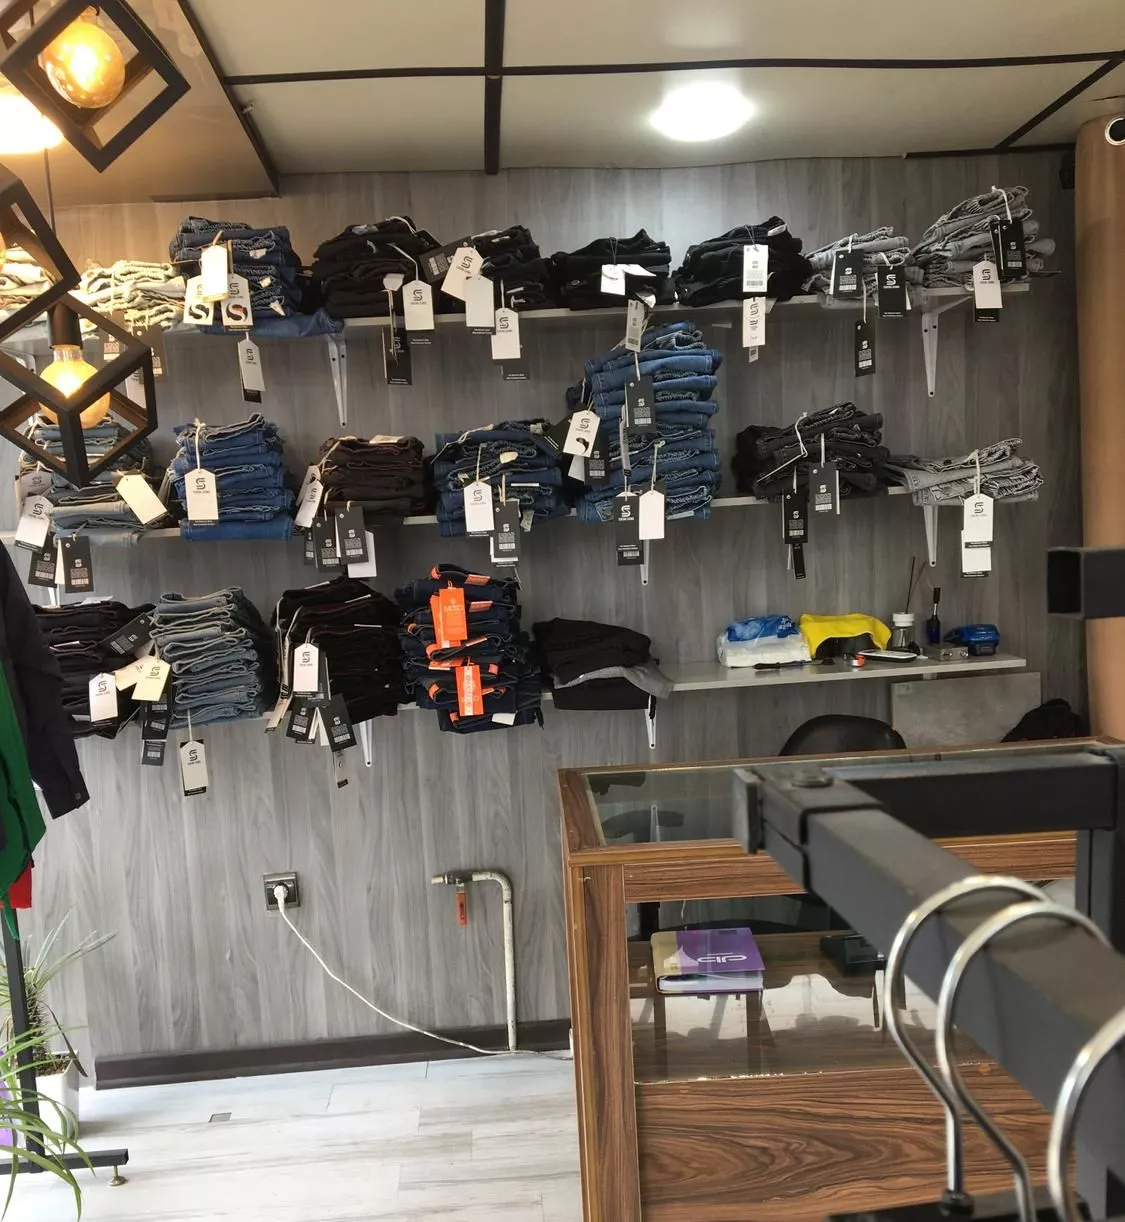 واگذاری مغازه پوشاک در خیابان ساری